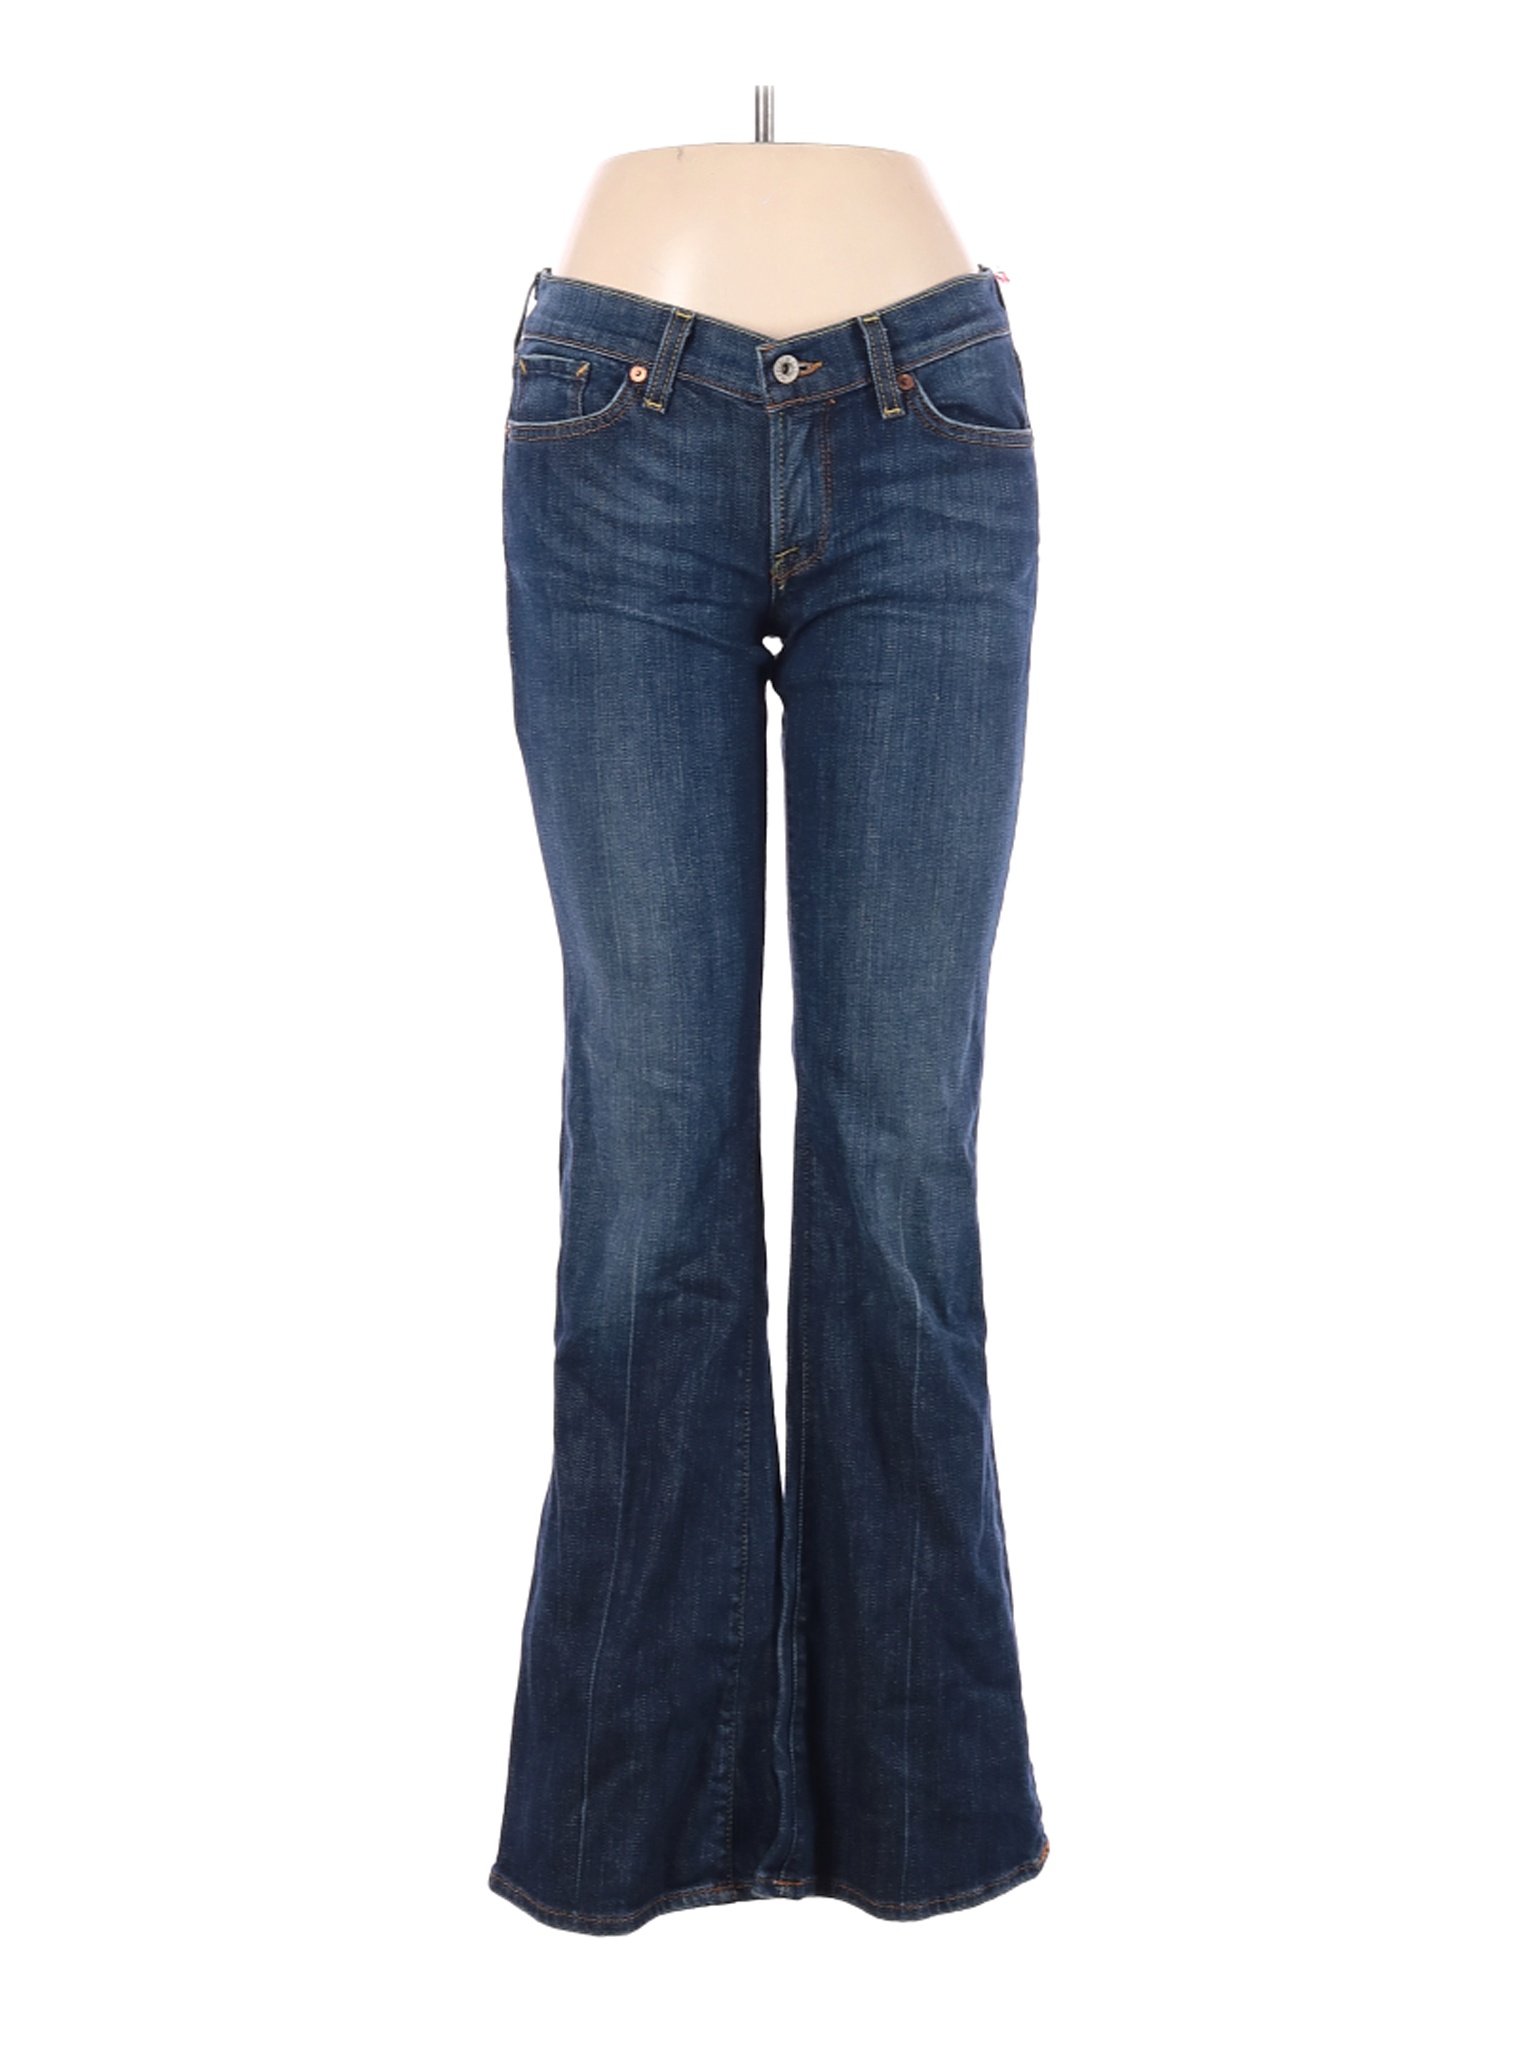 Lucky Brand Women Blue Jeans 28W | eBay